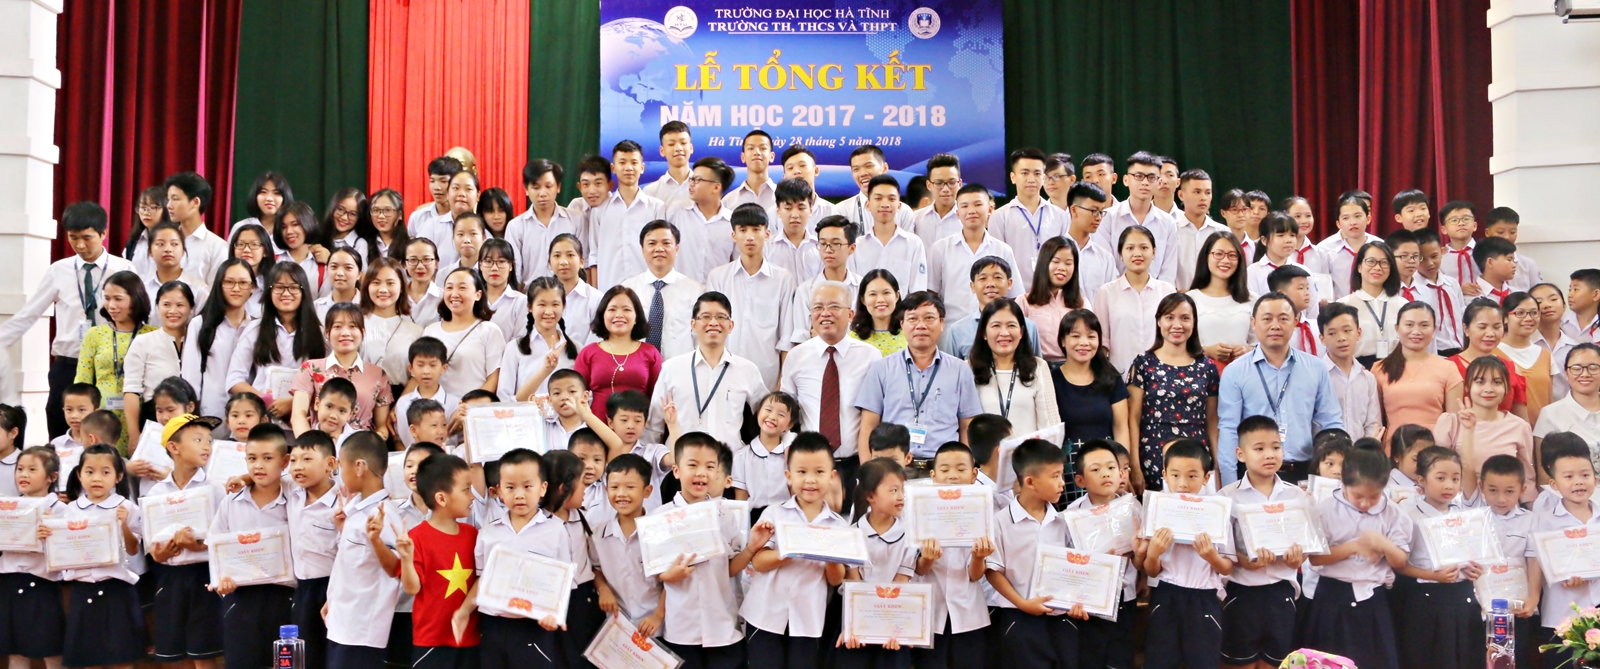 Lễ tổng kết năm học: 2017-2018